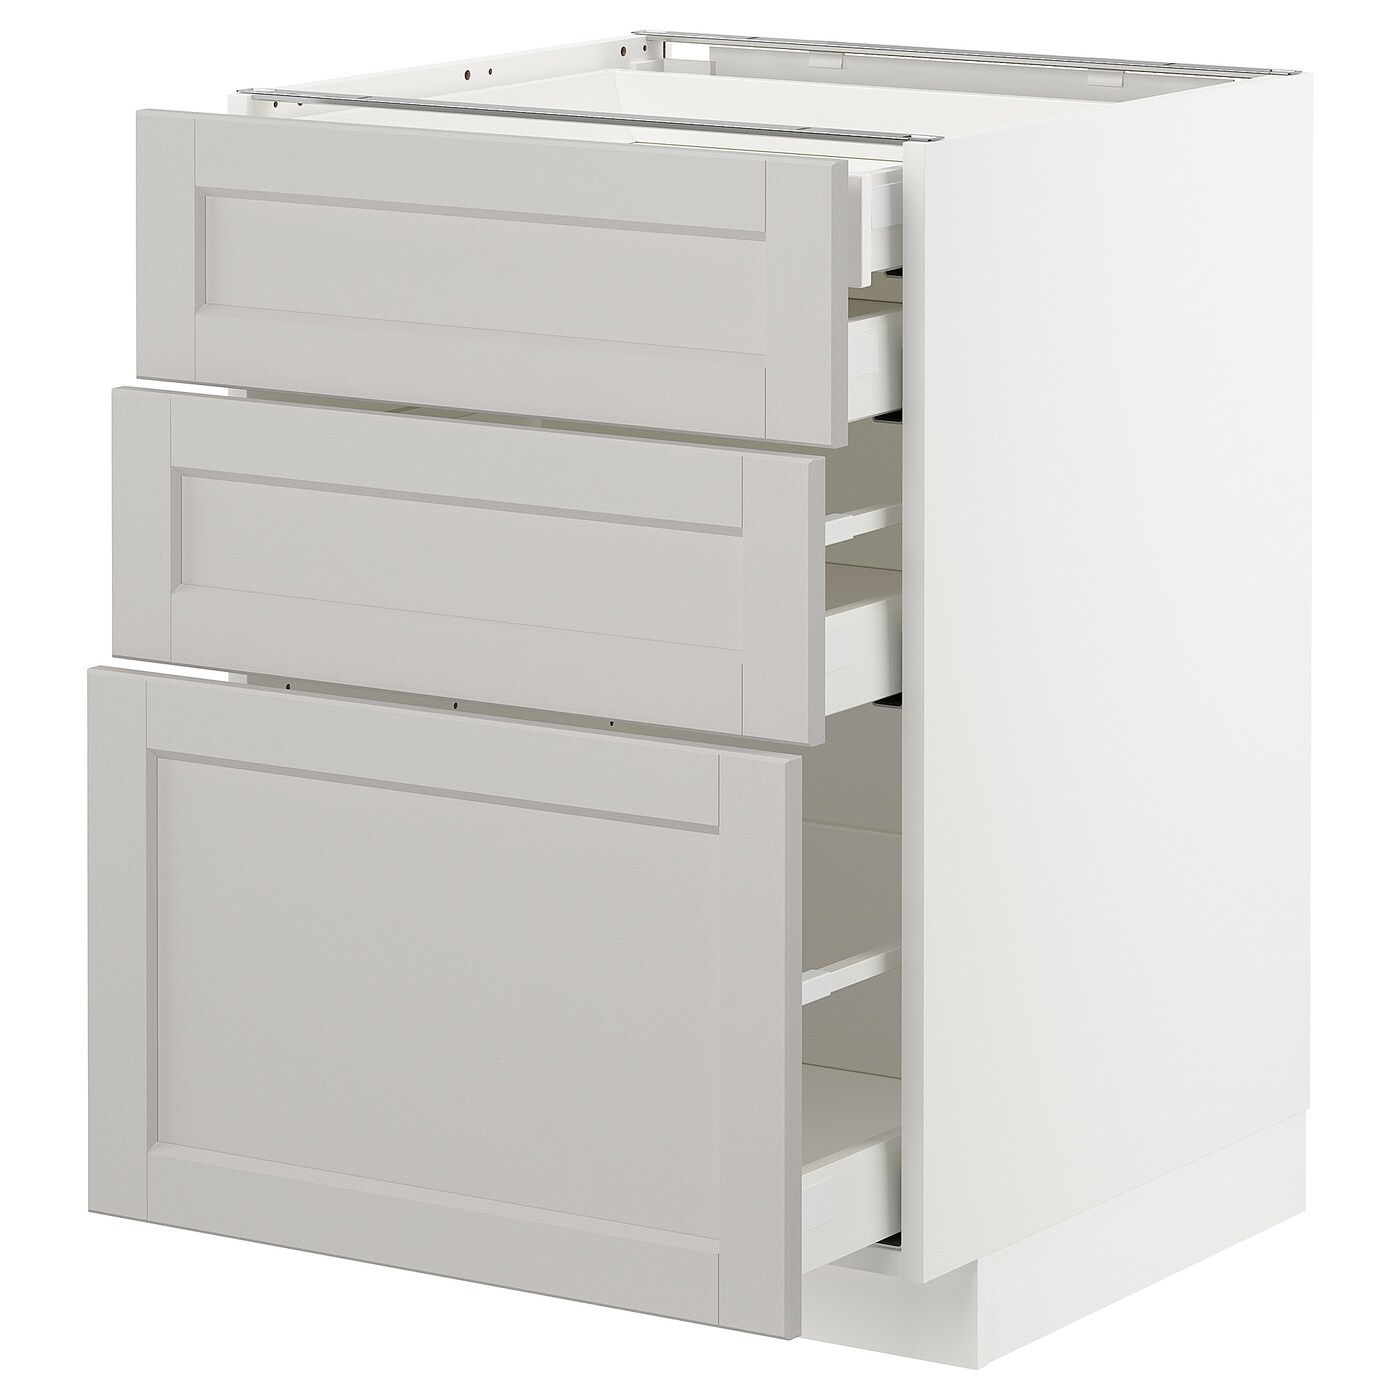 Напольный шкаф  - IKEA METOD MAXIMERA, 88x61,9x60см, белый/светло-серый, МЕТОД МАКСИМЕРА ИКЕА